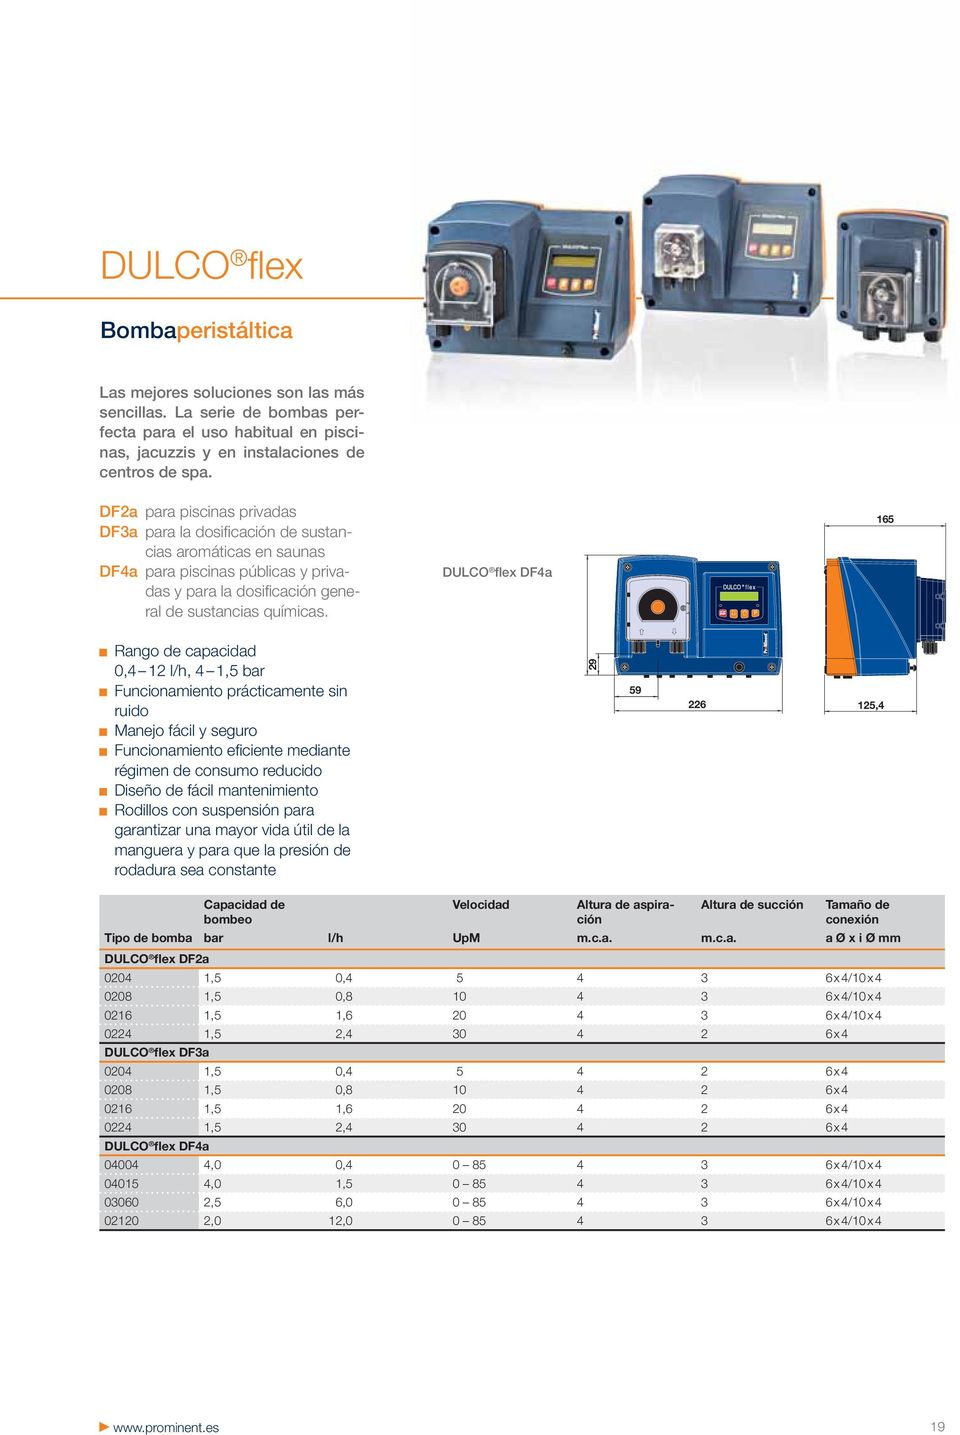 DULCO flex DF4a 165 0,4 12 l/h, 4 1,5 bar Funcionamiento prácticamente sin ruido Manejo fácil y seguro Funcionamiento efi ciente mediante régimen de consumo reducido Diseño de fácil mantenimiento